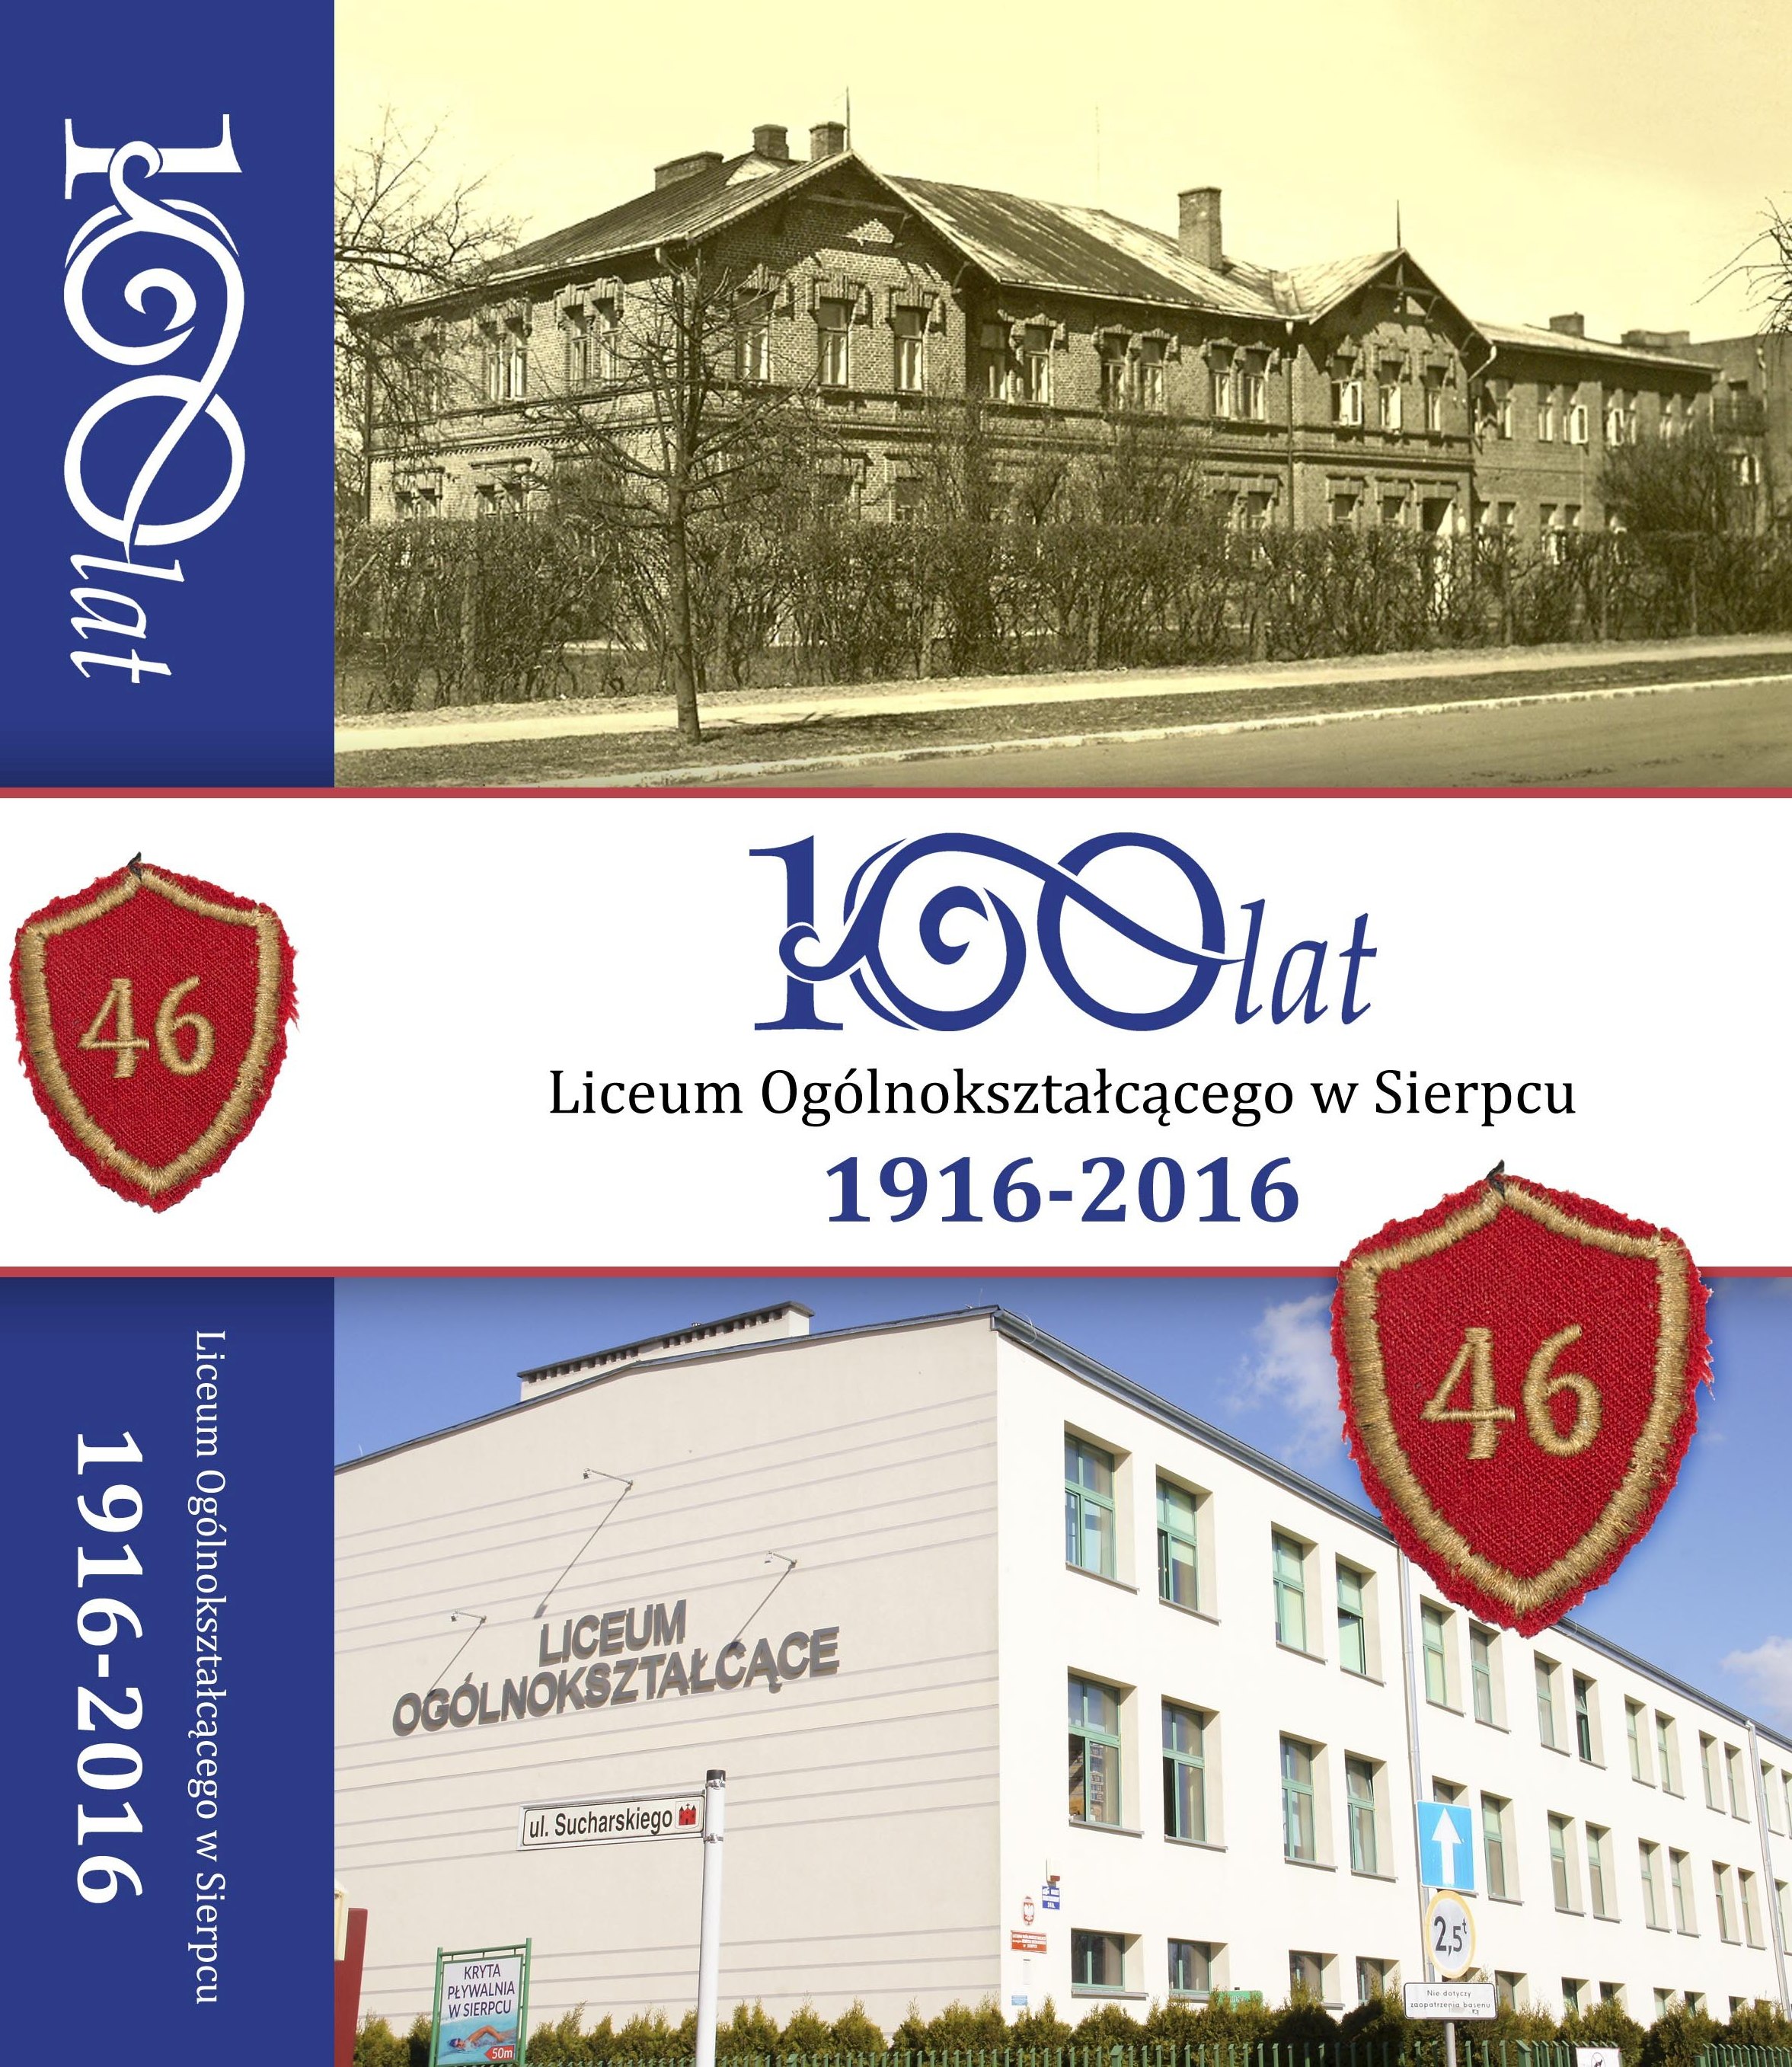 100 lat Liceum Oglnoksztaccego w Sierpcu 1916-2016, pod red. Magdaleny Stanisze­wskiej,  Sierpc 2016